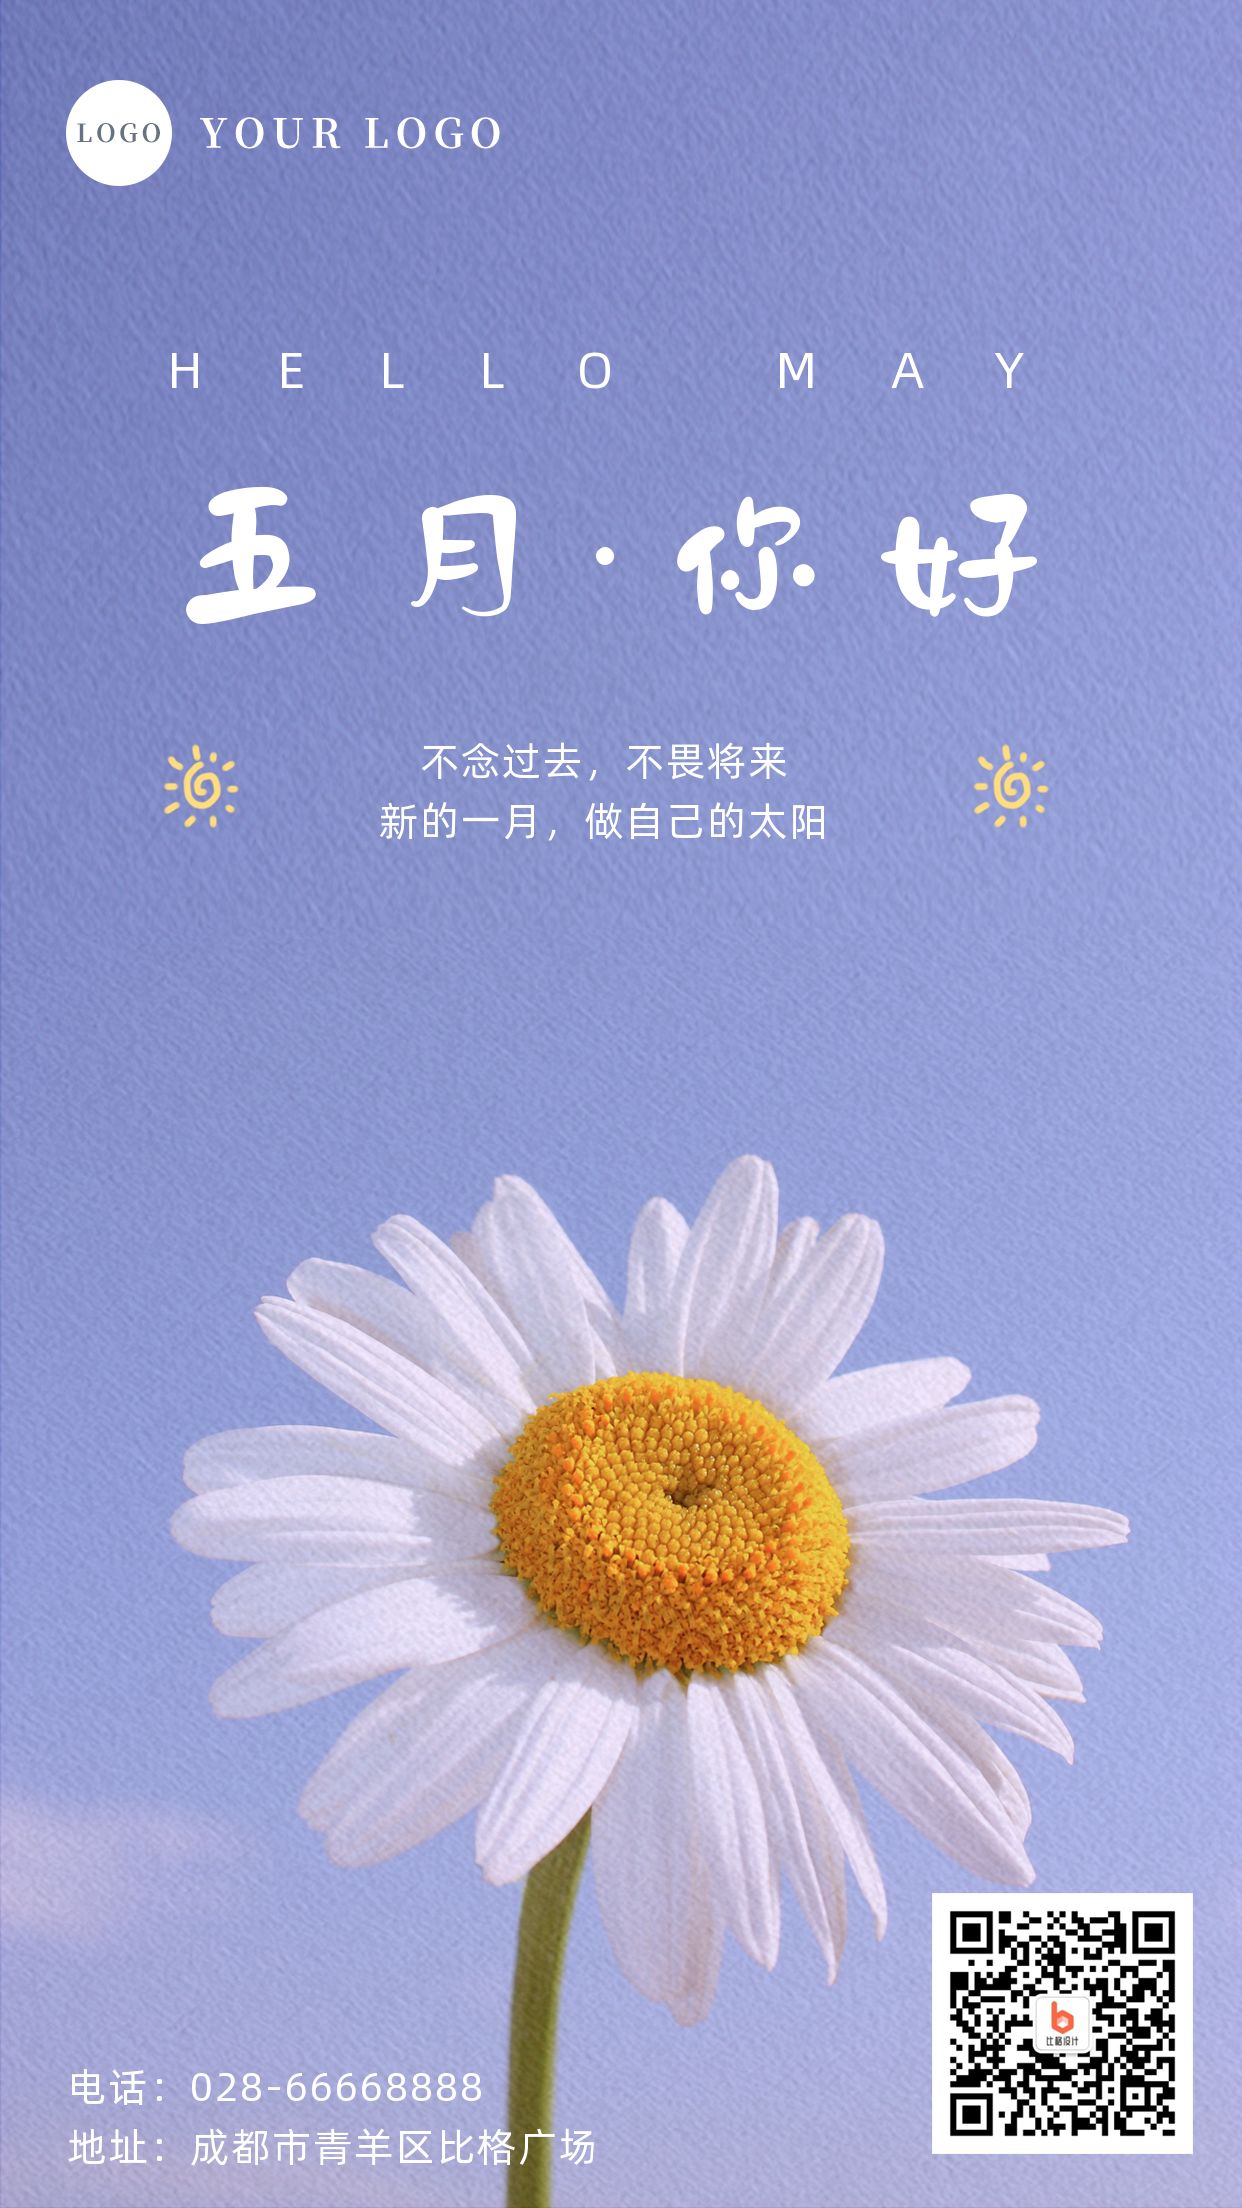 浪漫五月之恋粉色520节日表白爱情故事图片开场AE模板-92素材网